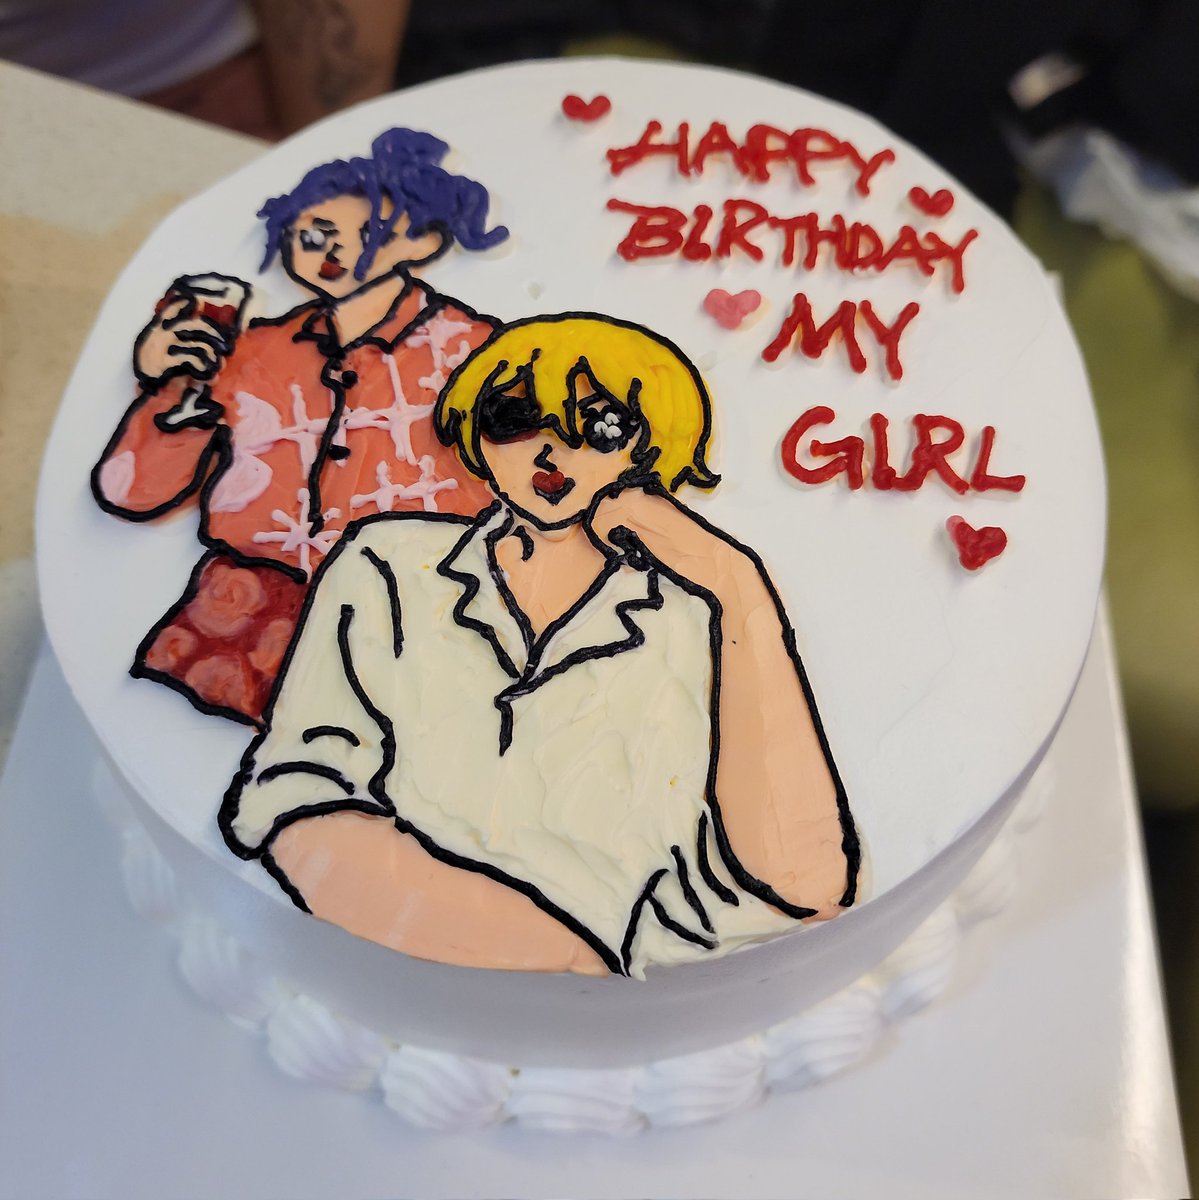 ㅠㅠㅠㅠㅠㅠㅠㅠㅠㅠㅠㅠㅠㅠㅠㅠㅠㅠ
늦은 생일 축하로 받은 케이크
 아💢옼 